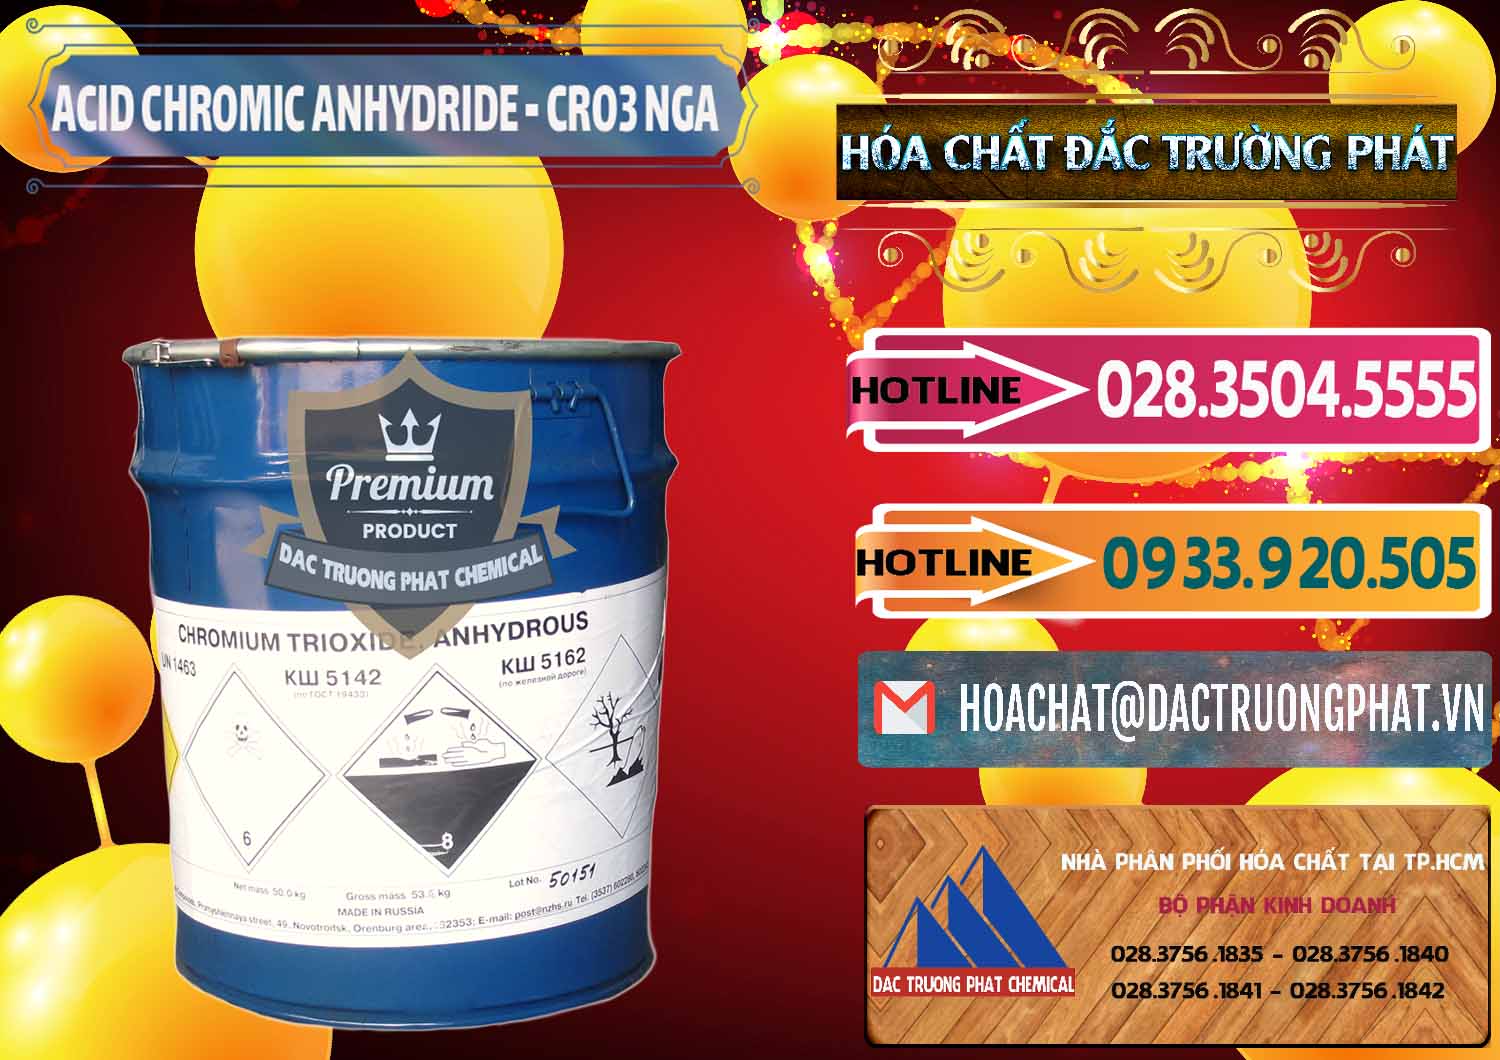 Cty chuyên bán - cung ứng Acid Chromic Anhydride - Cromic CRO3 Nga Russia - 0006 - Công ty phân phối và cung ứng hóa chất tại TP.HCM - dactruongphat.vn